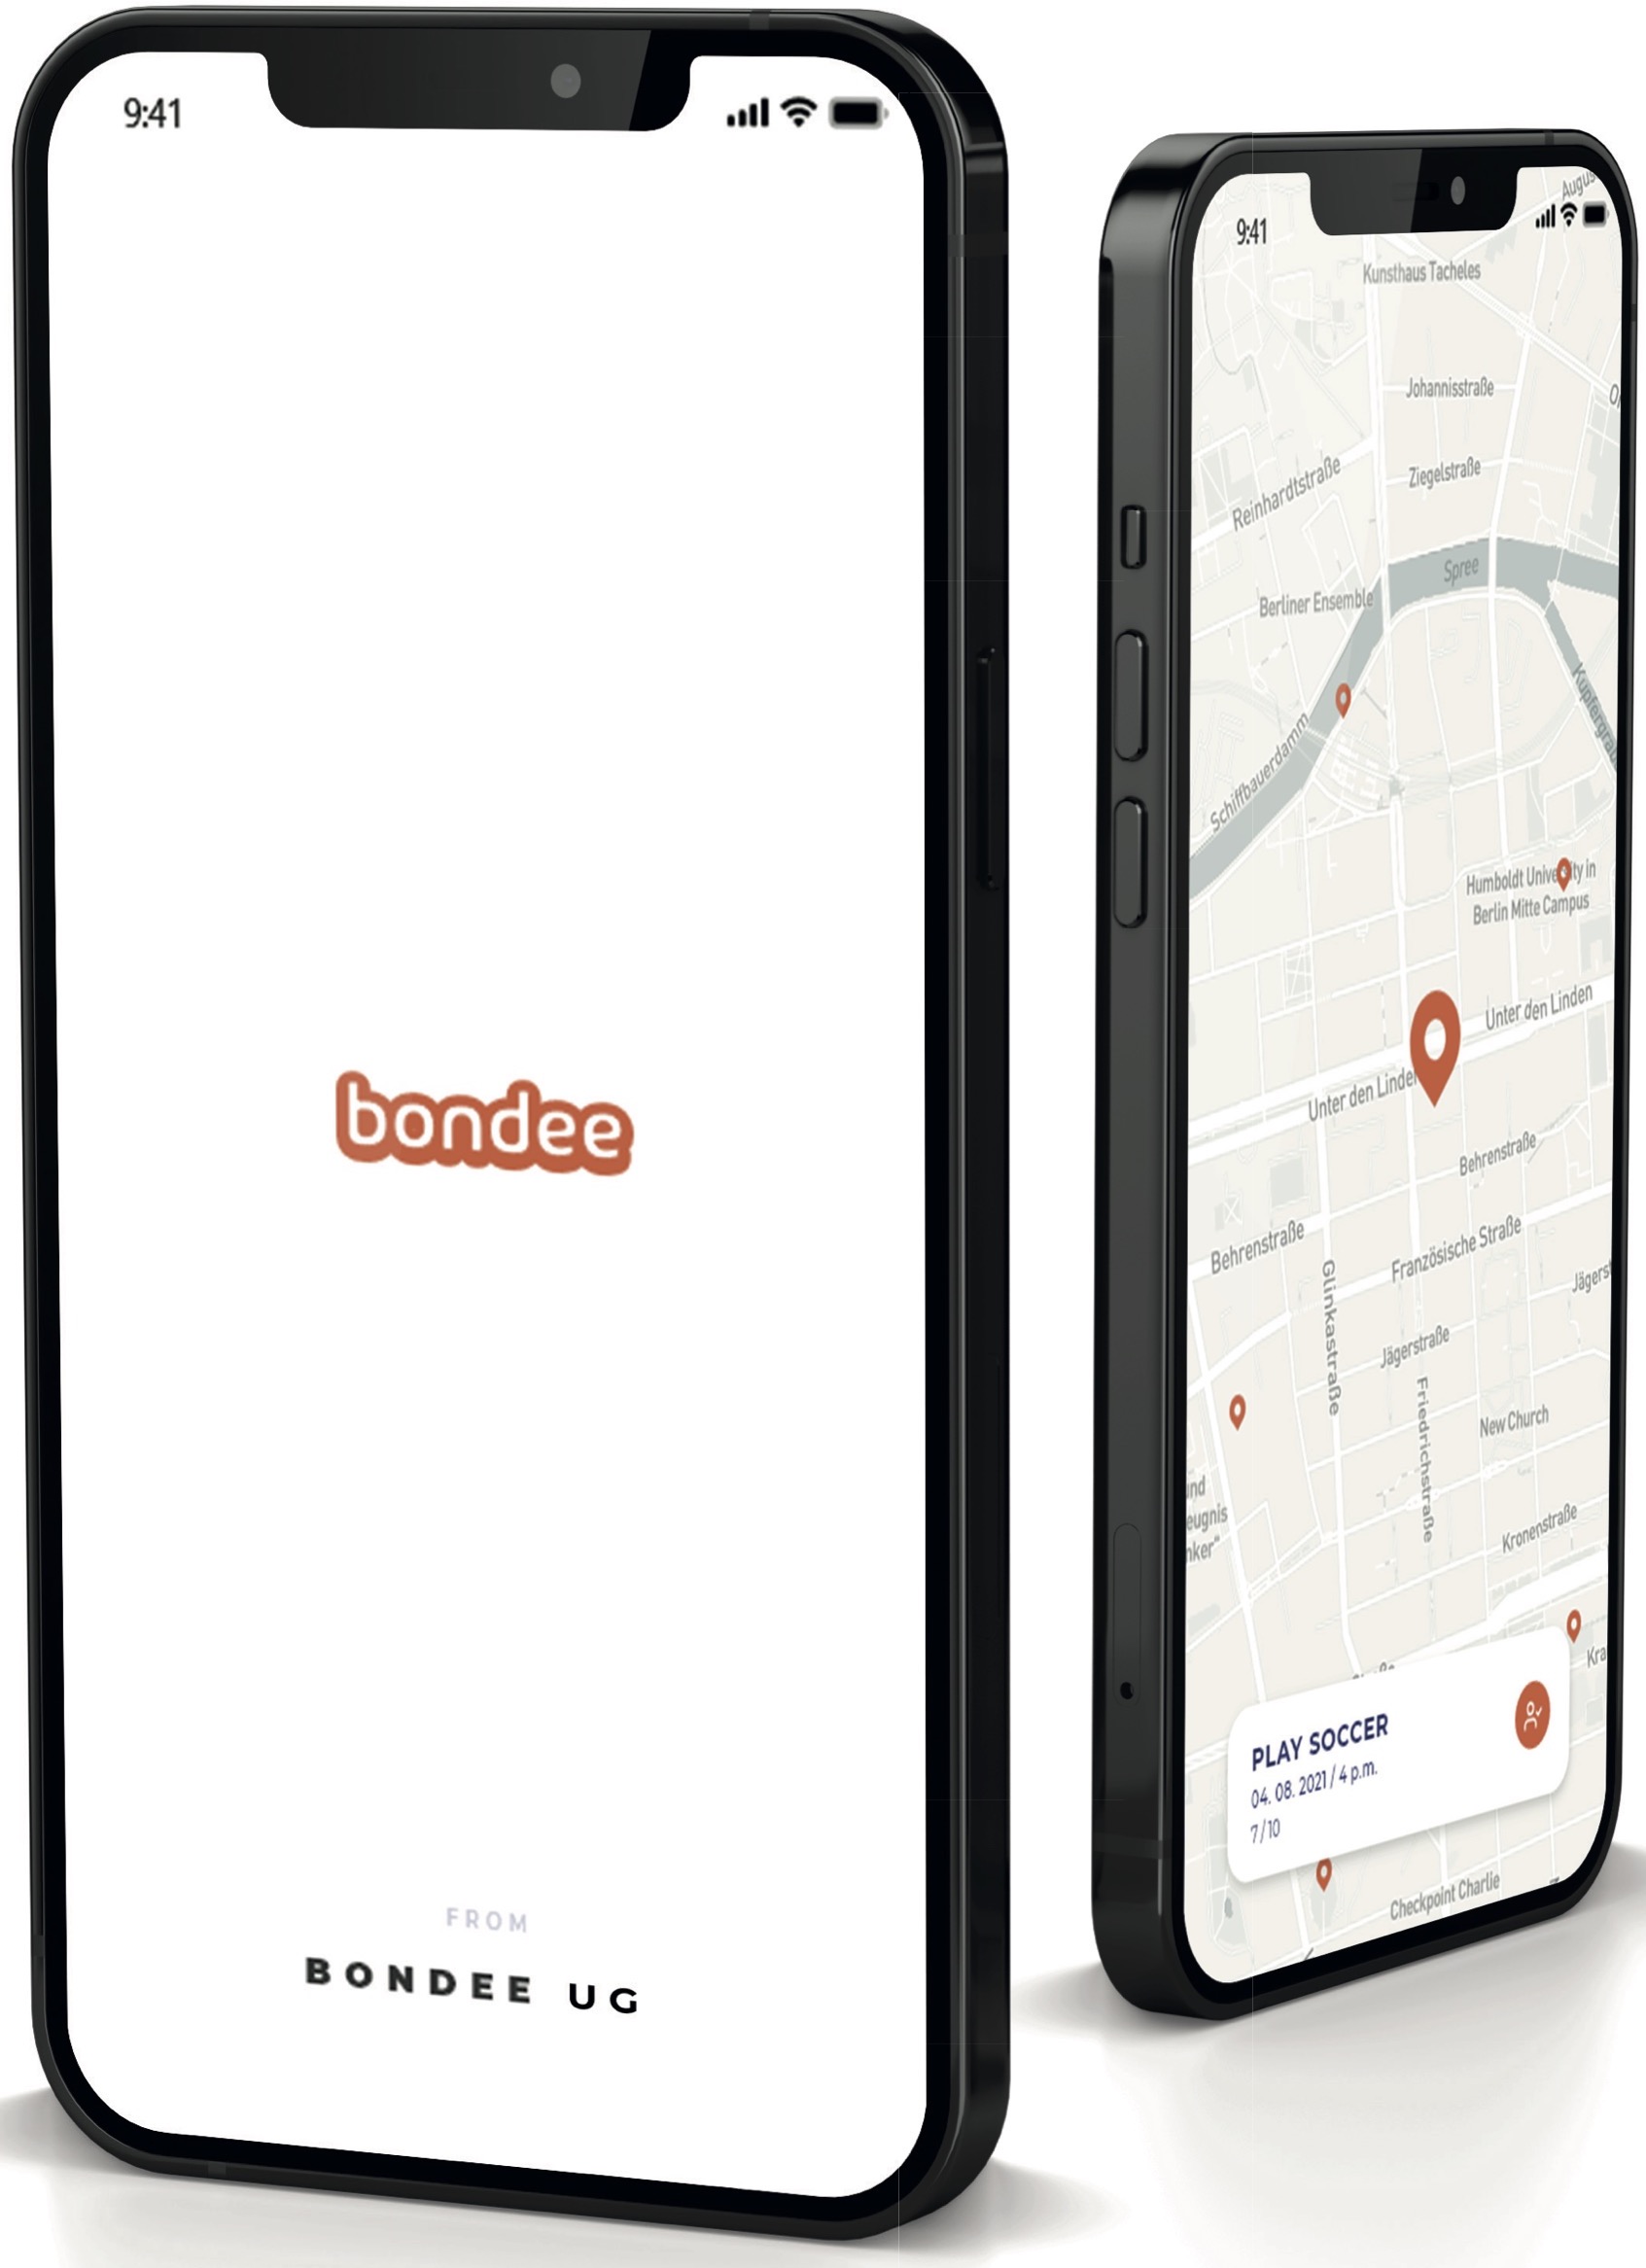 Screenshots of the Bondee App